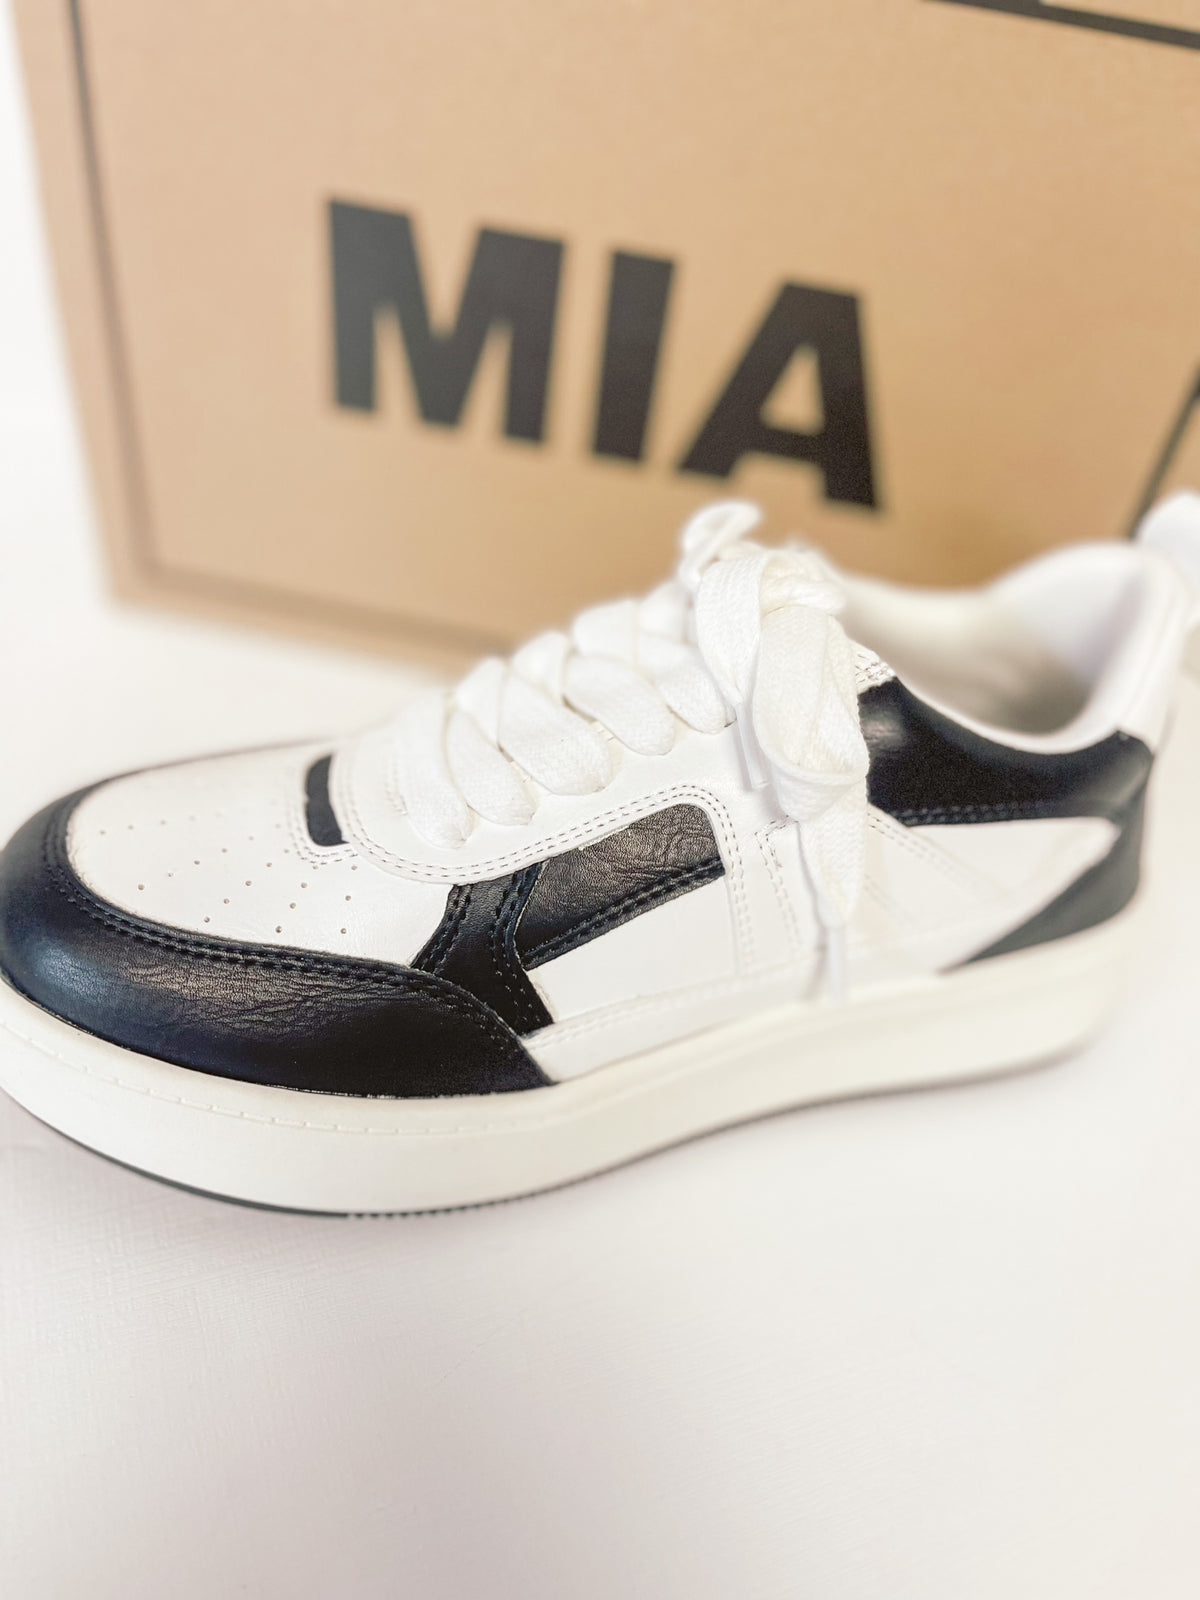 Mia Malta Sneaker in Dice